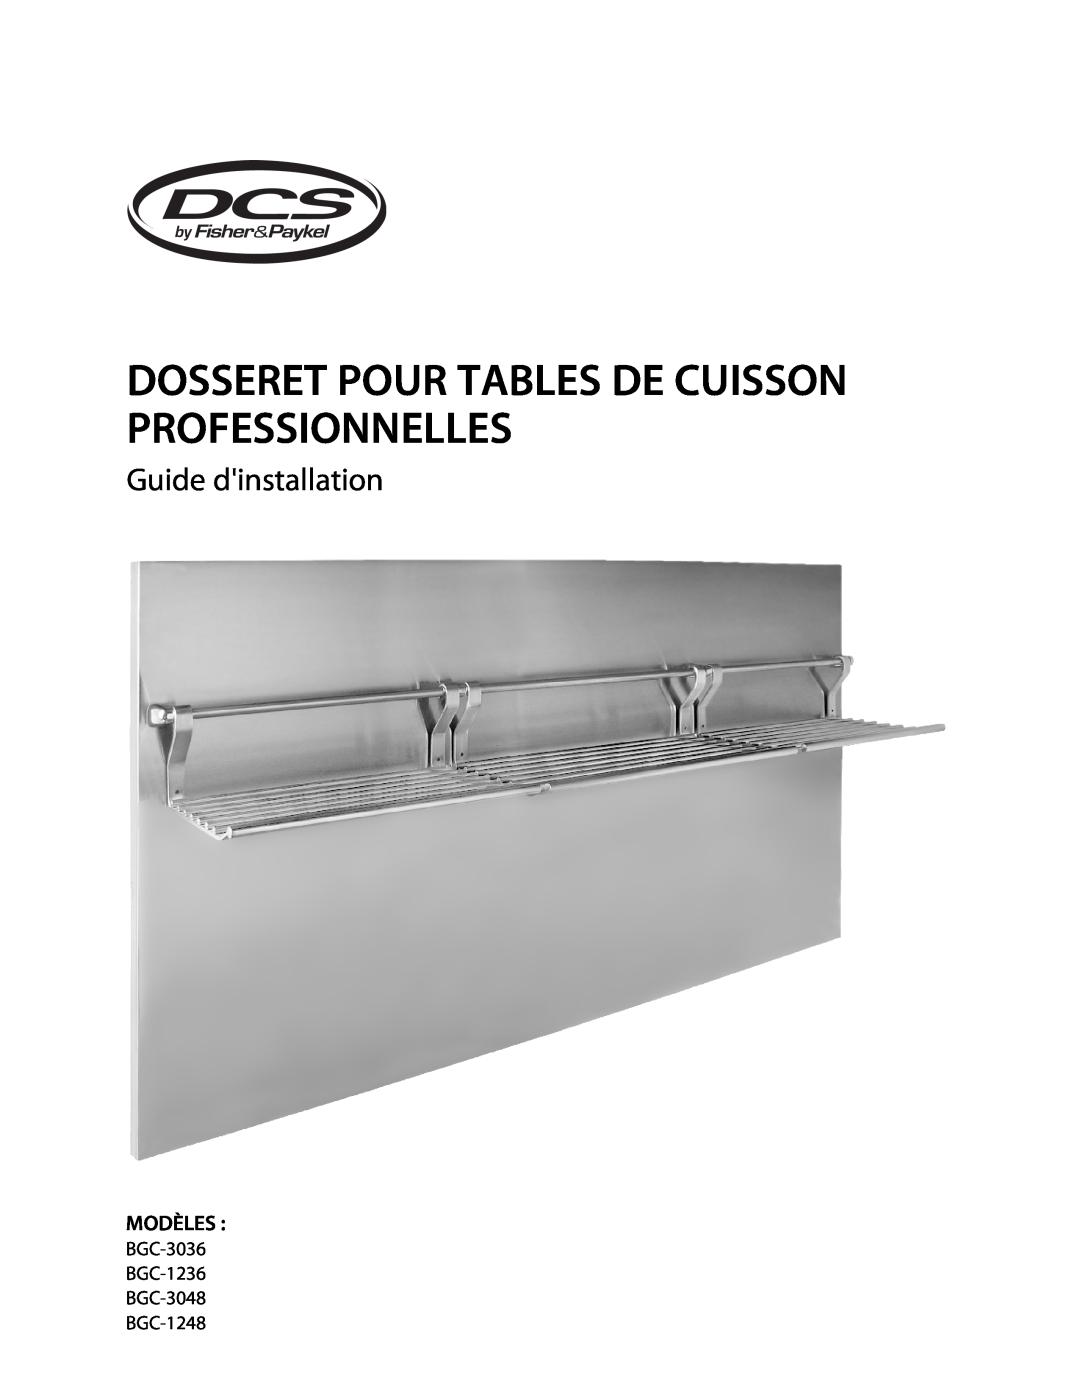 DCS BGC-1236, BGC-3048, BGC-3036, BGC-1248 Dosseret Pour Tables De Cuisson Professionnelles, Guide dinstallation, Modèles 